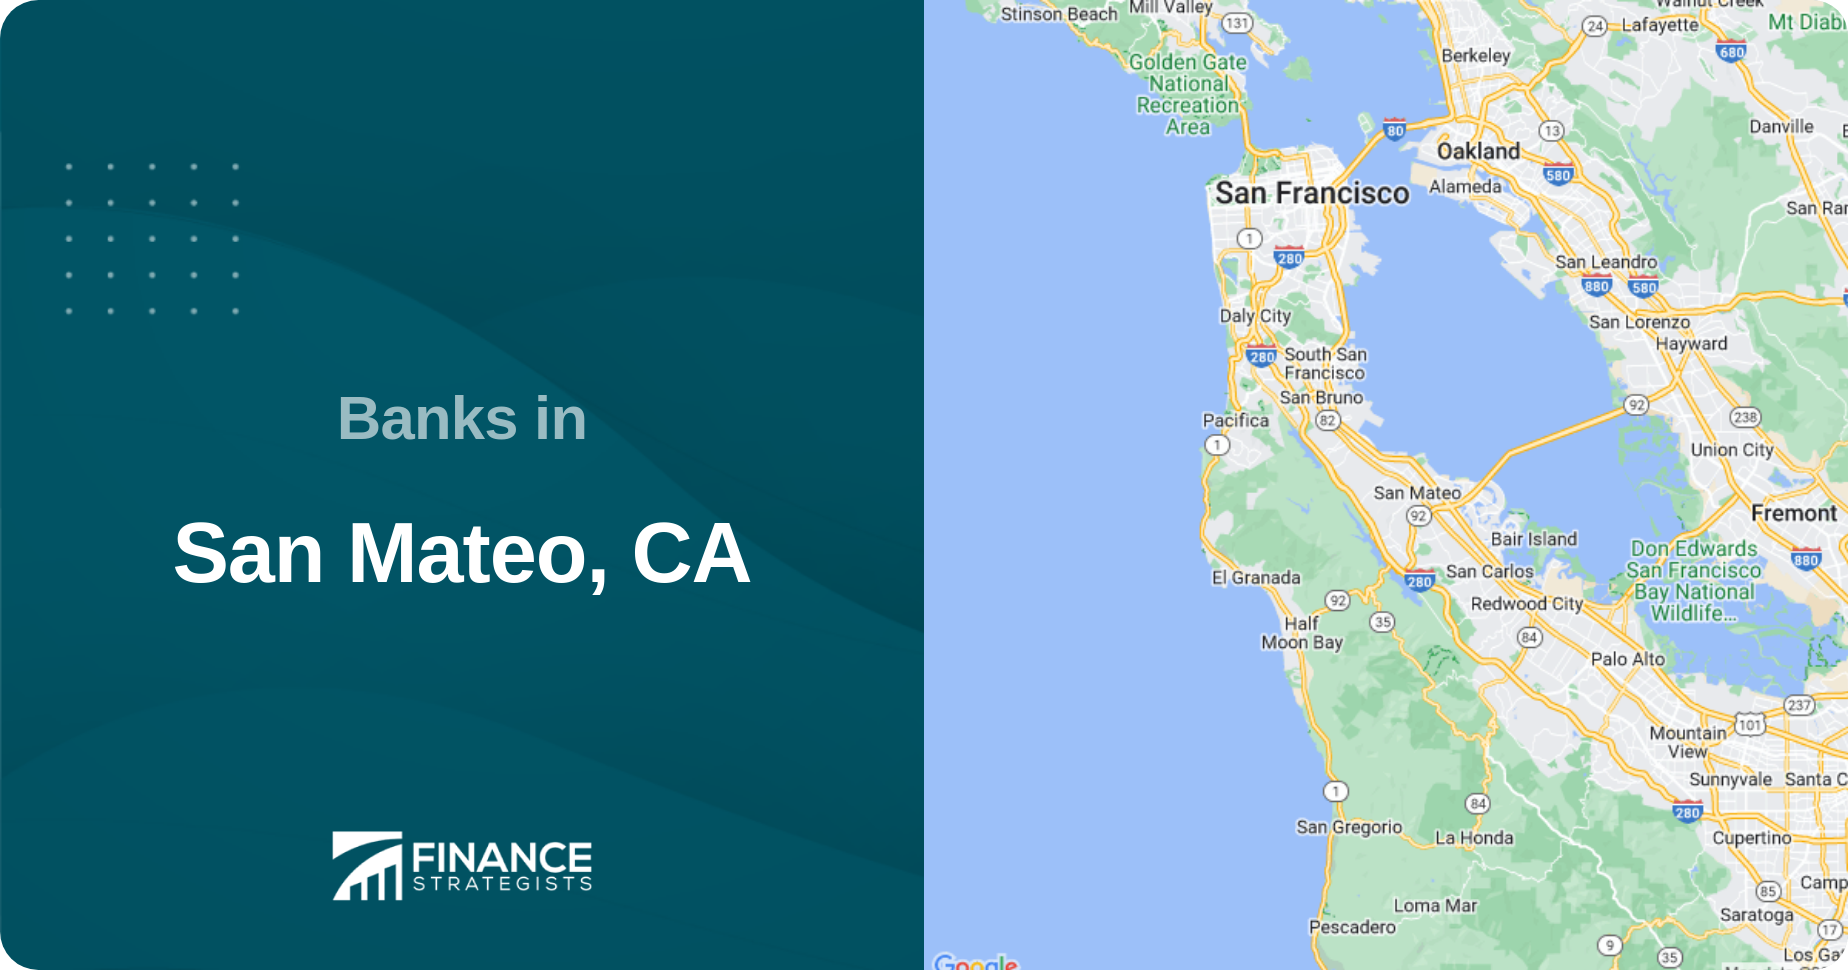 Banks in San Mateo, CA